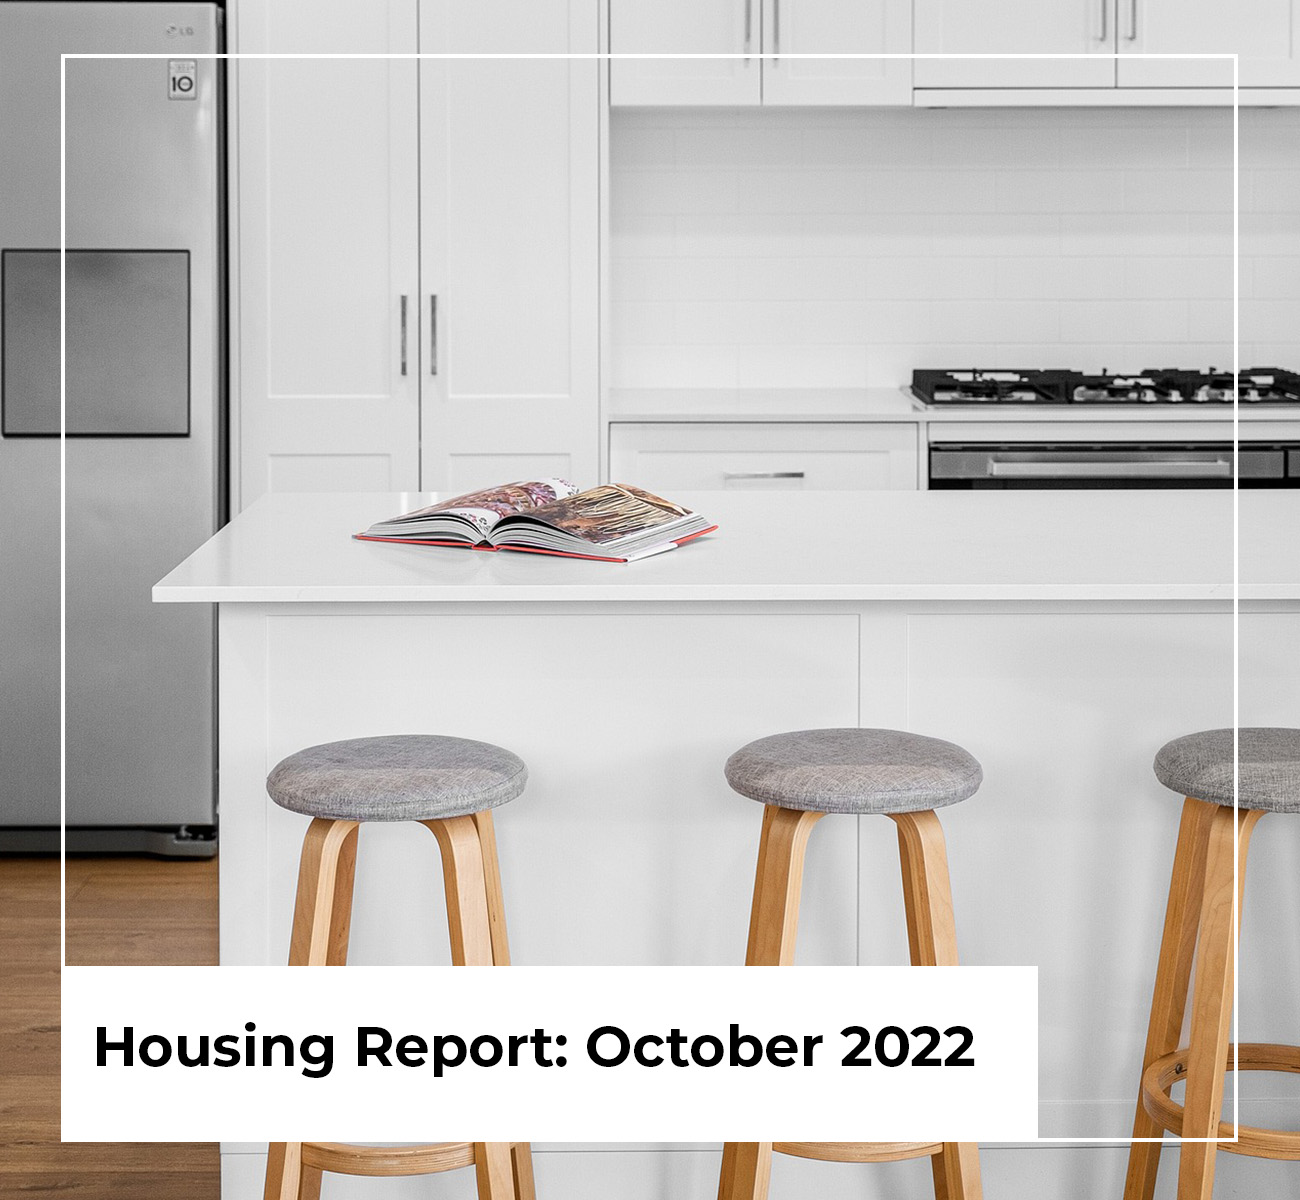 Housing Report: October 2022